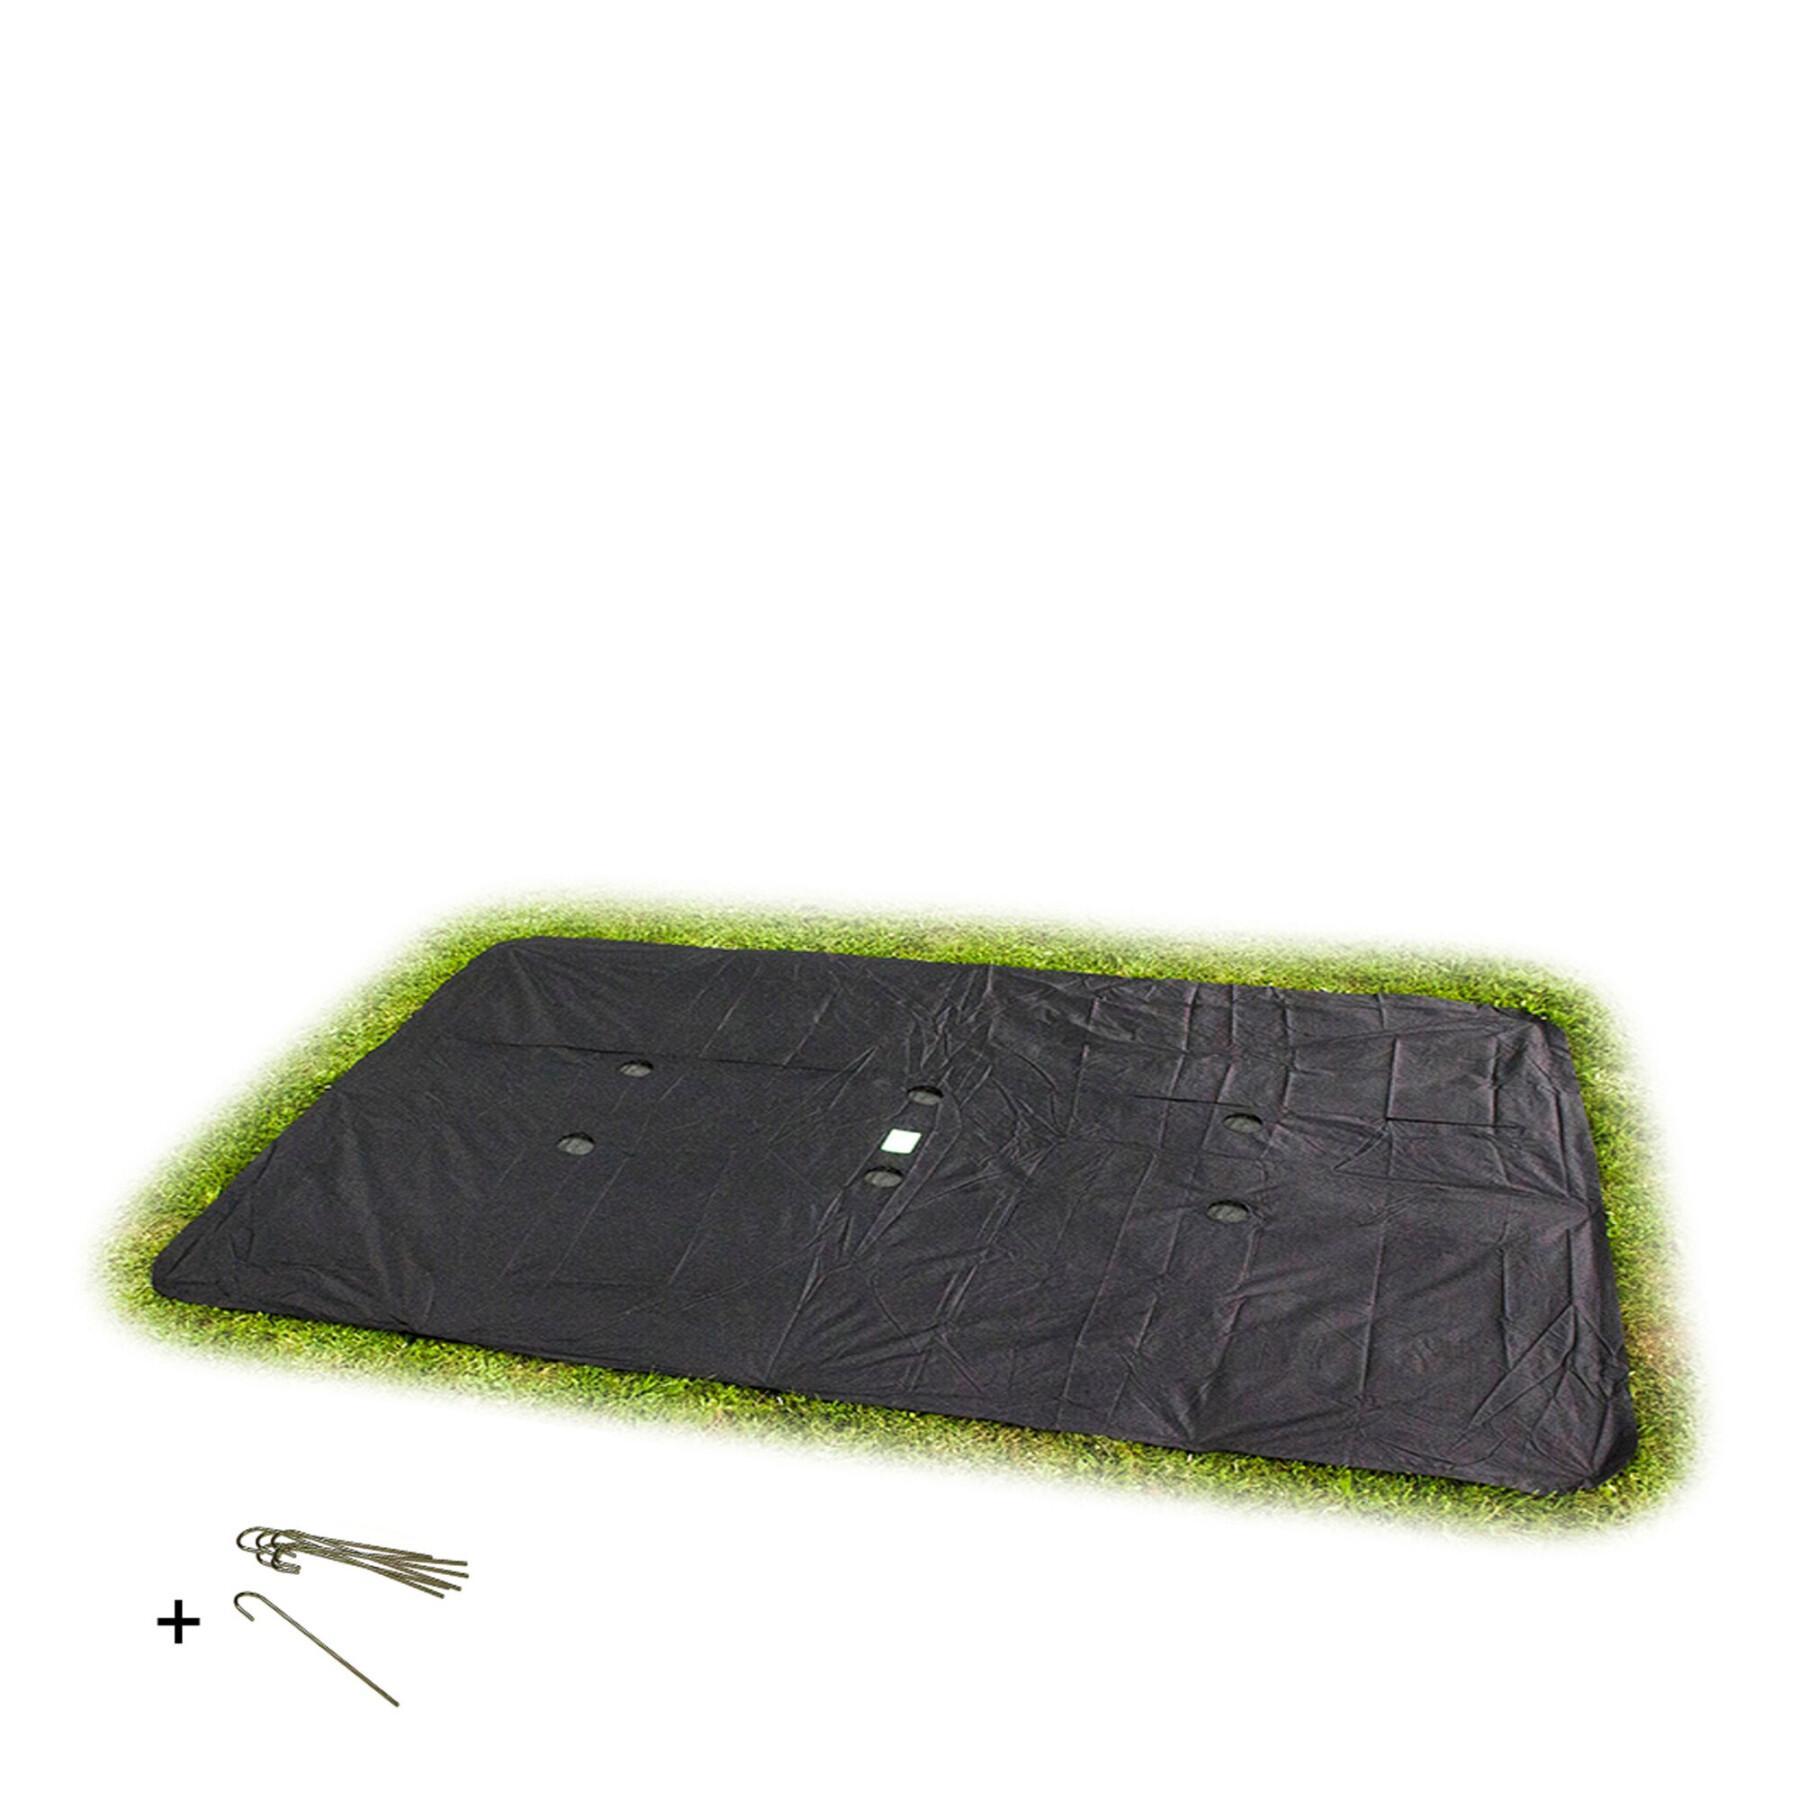 Prostokątna osłona ochronna do trampoliny w poziomie gruntu Exit Toys 305 x 519 cm